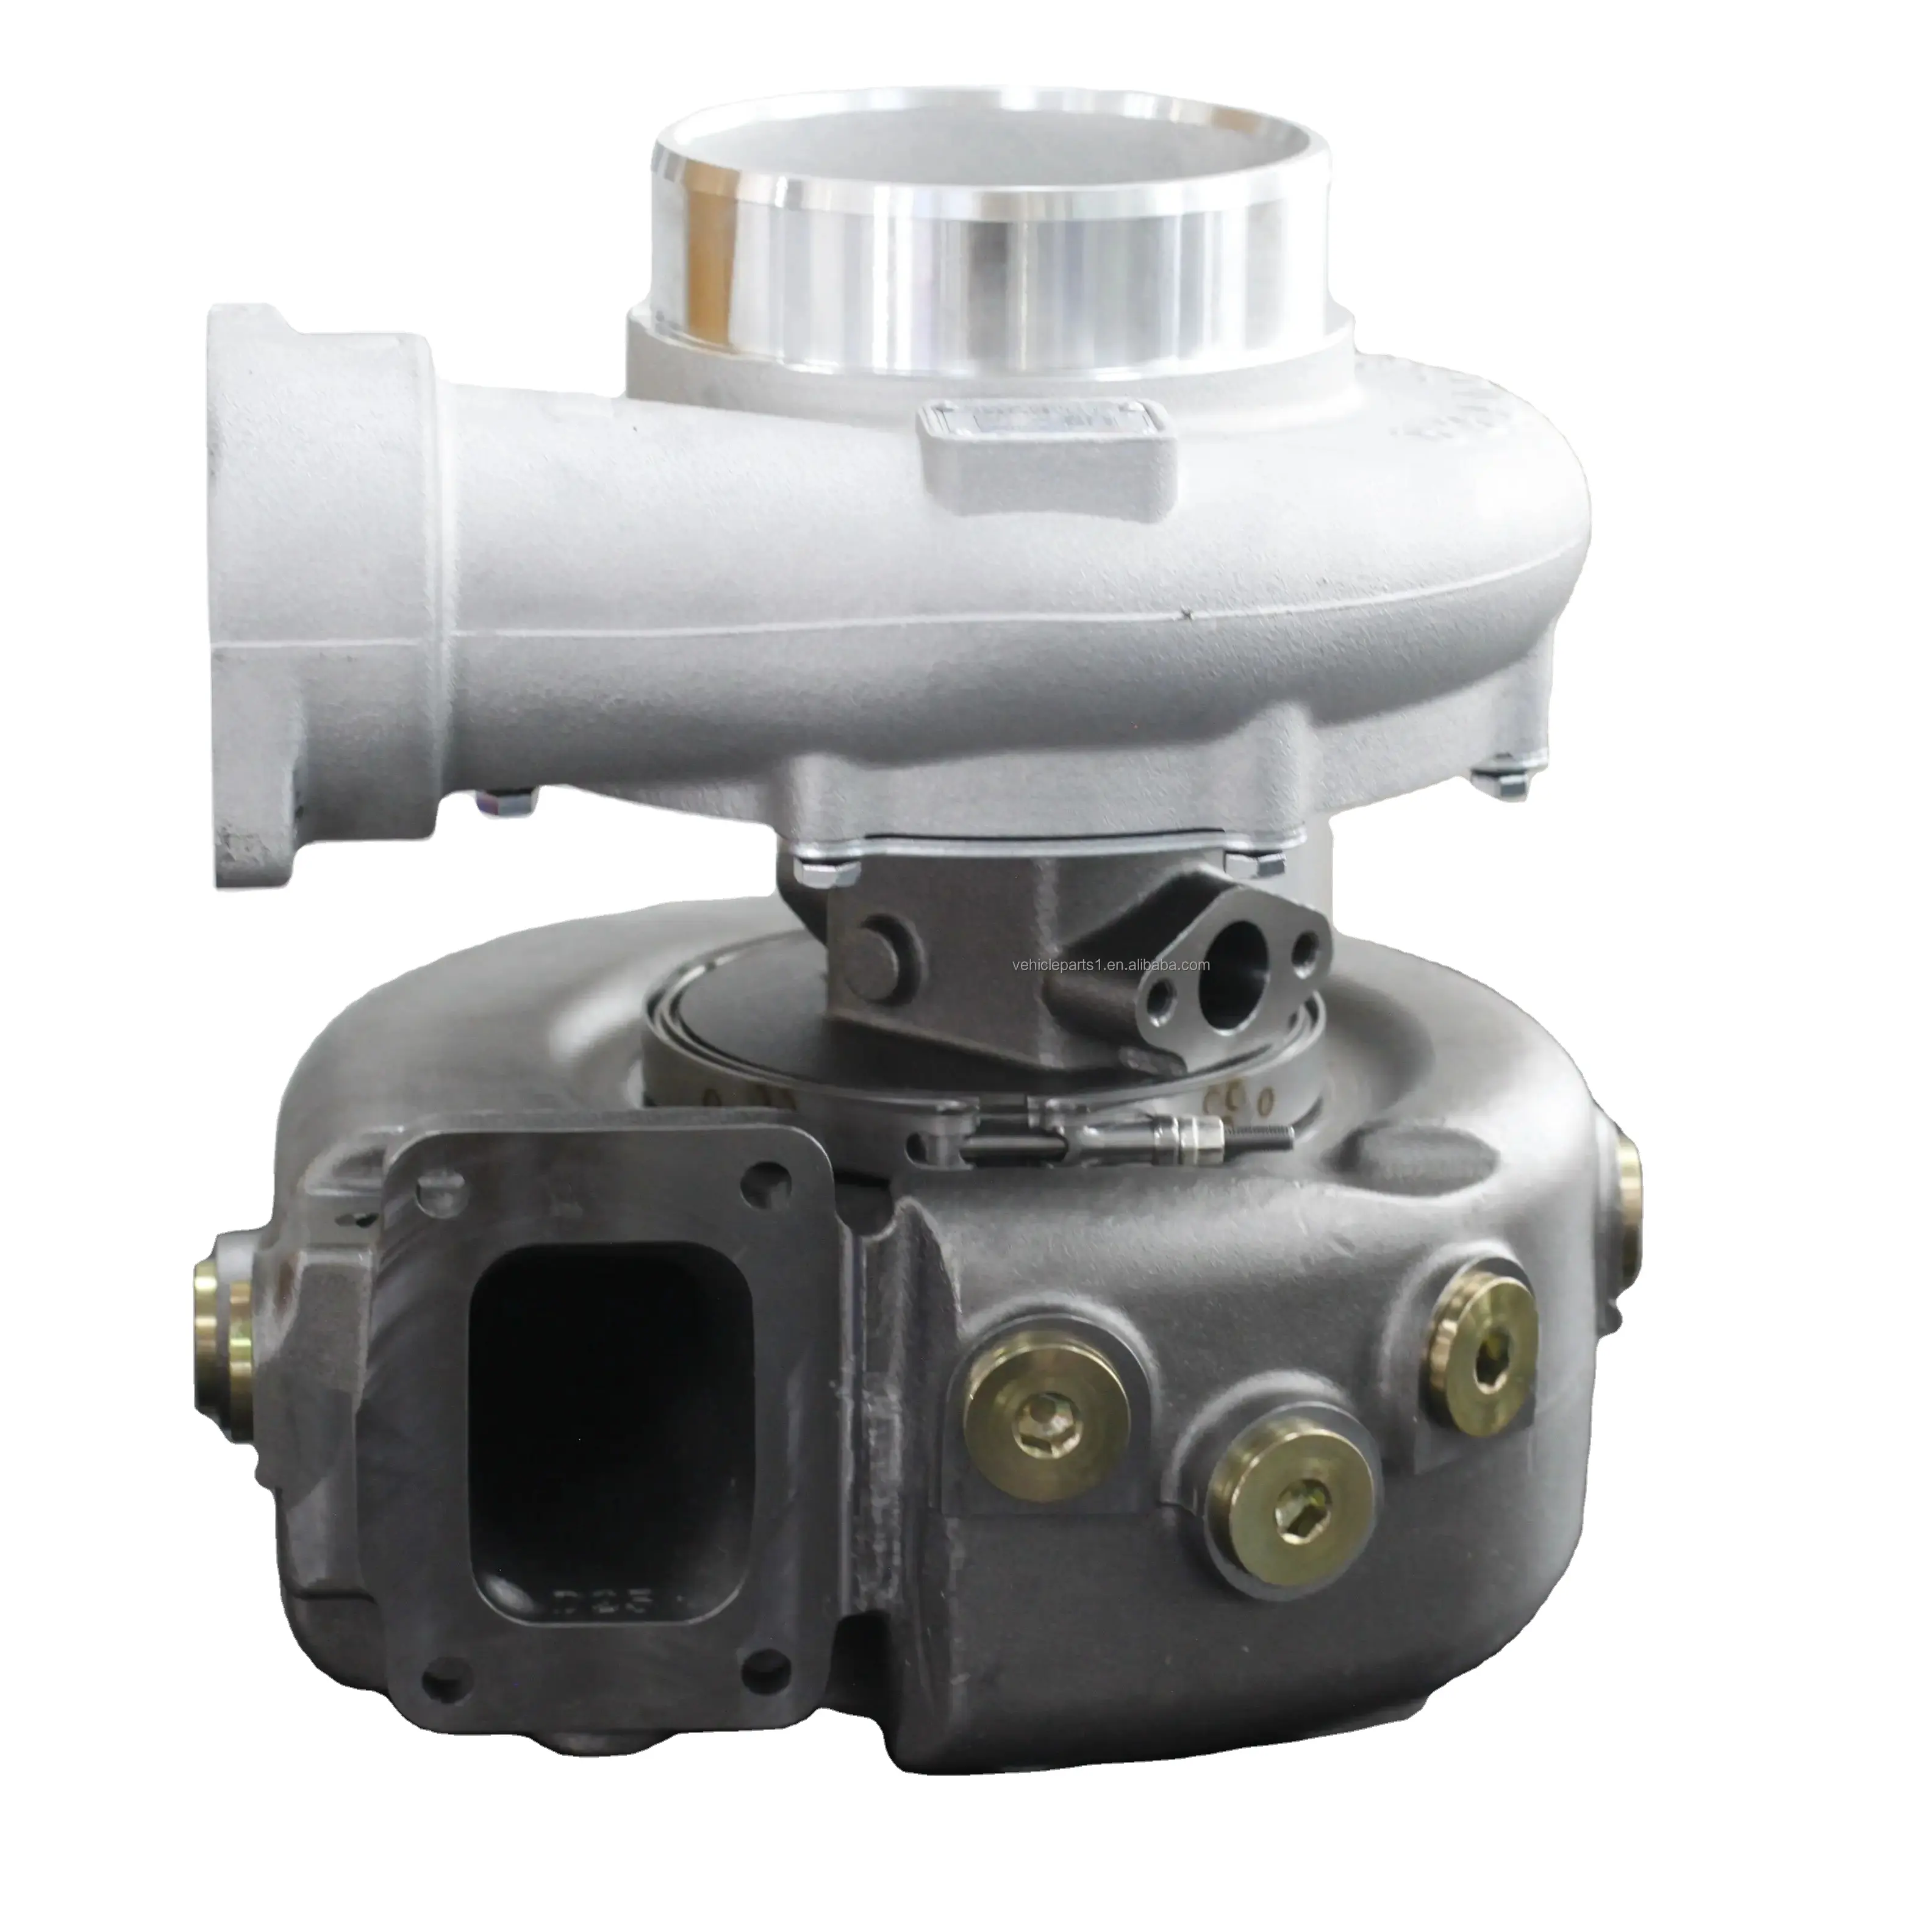 Детали двигателя OEM J135A/W128, турбонагнетатель, 1000430068 применение для дизельного двигателя Baudouin 6M26